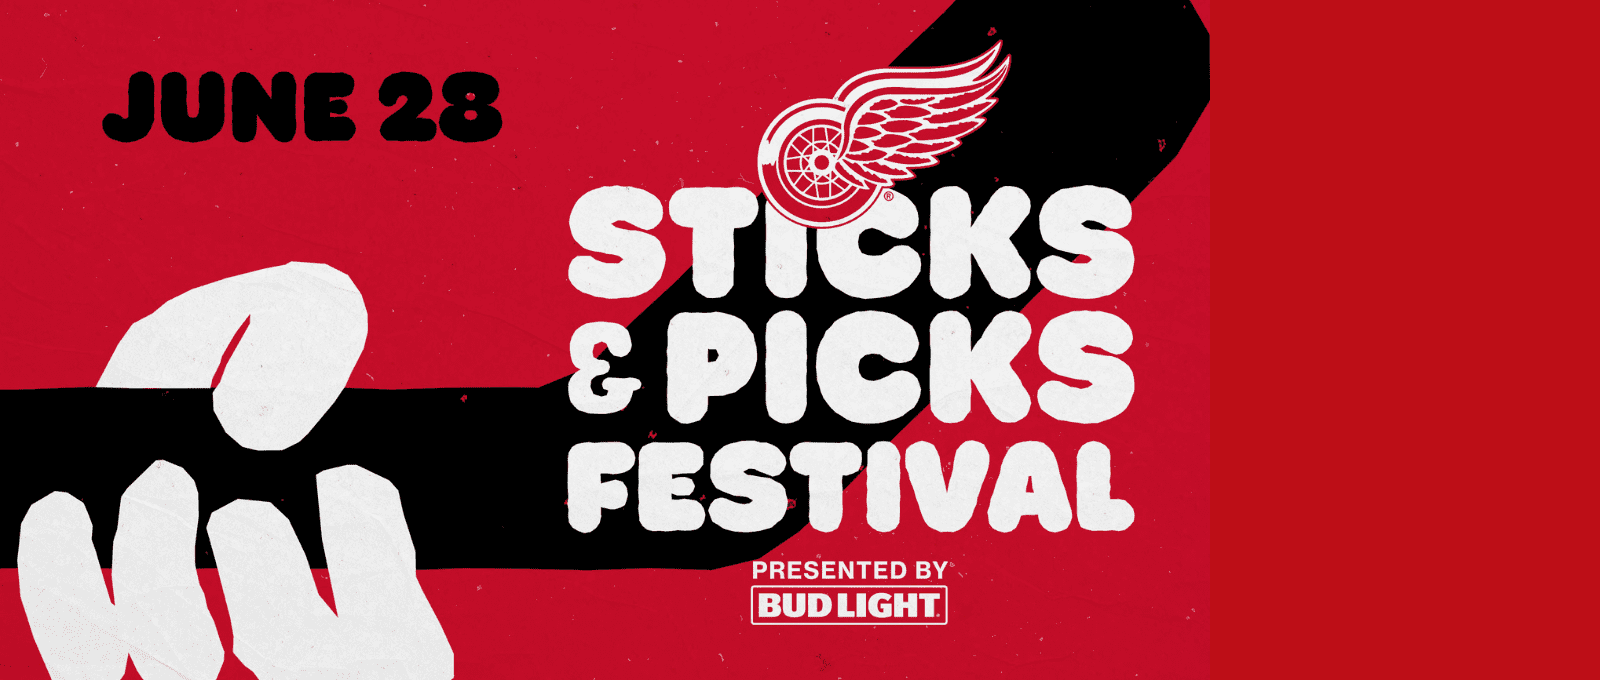 Detroit Red Wings Sticks and Picks Festival On June 28